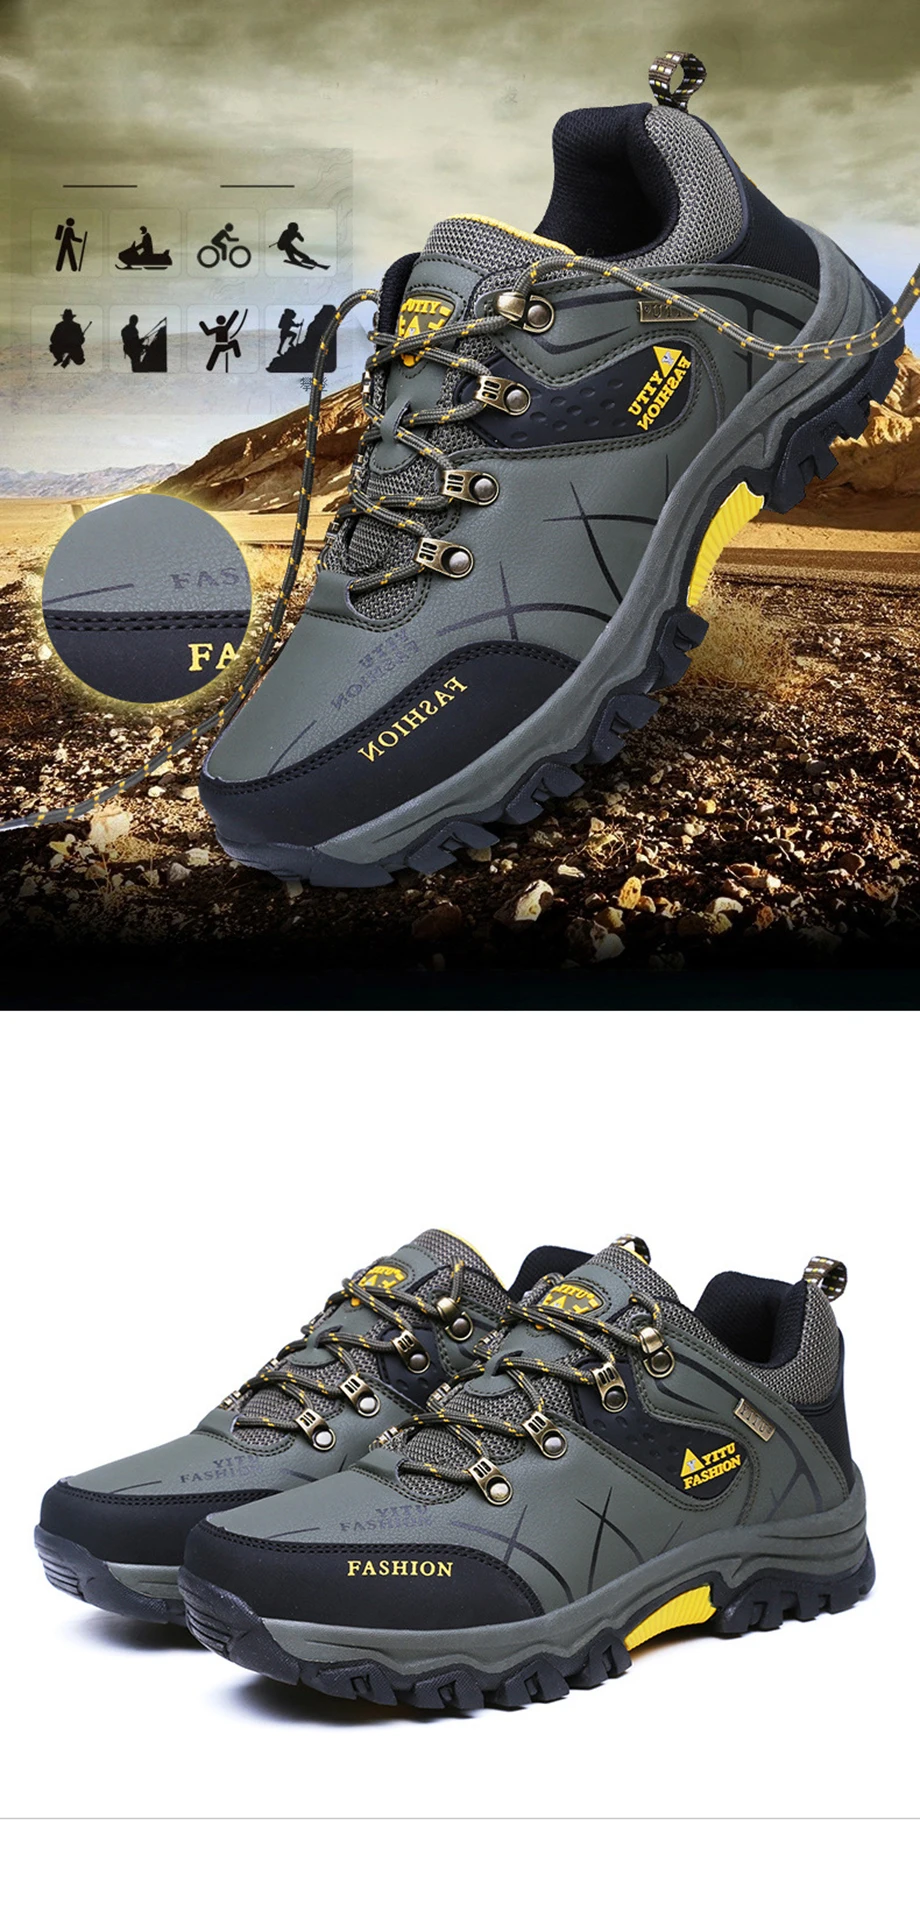 QMJHVX/мужские зимние треккинговые ботинки; Водонепроницаемая кожаная обувь; обувь для альпинизма, рыбалки; новая популярная Уличная обувь; Быстрая